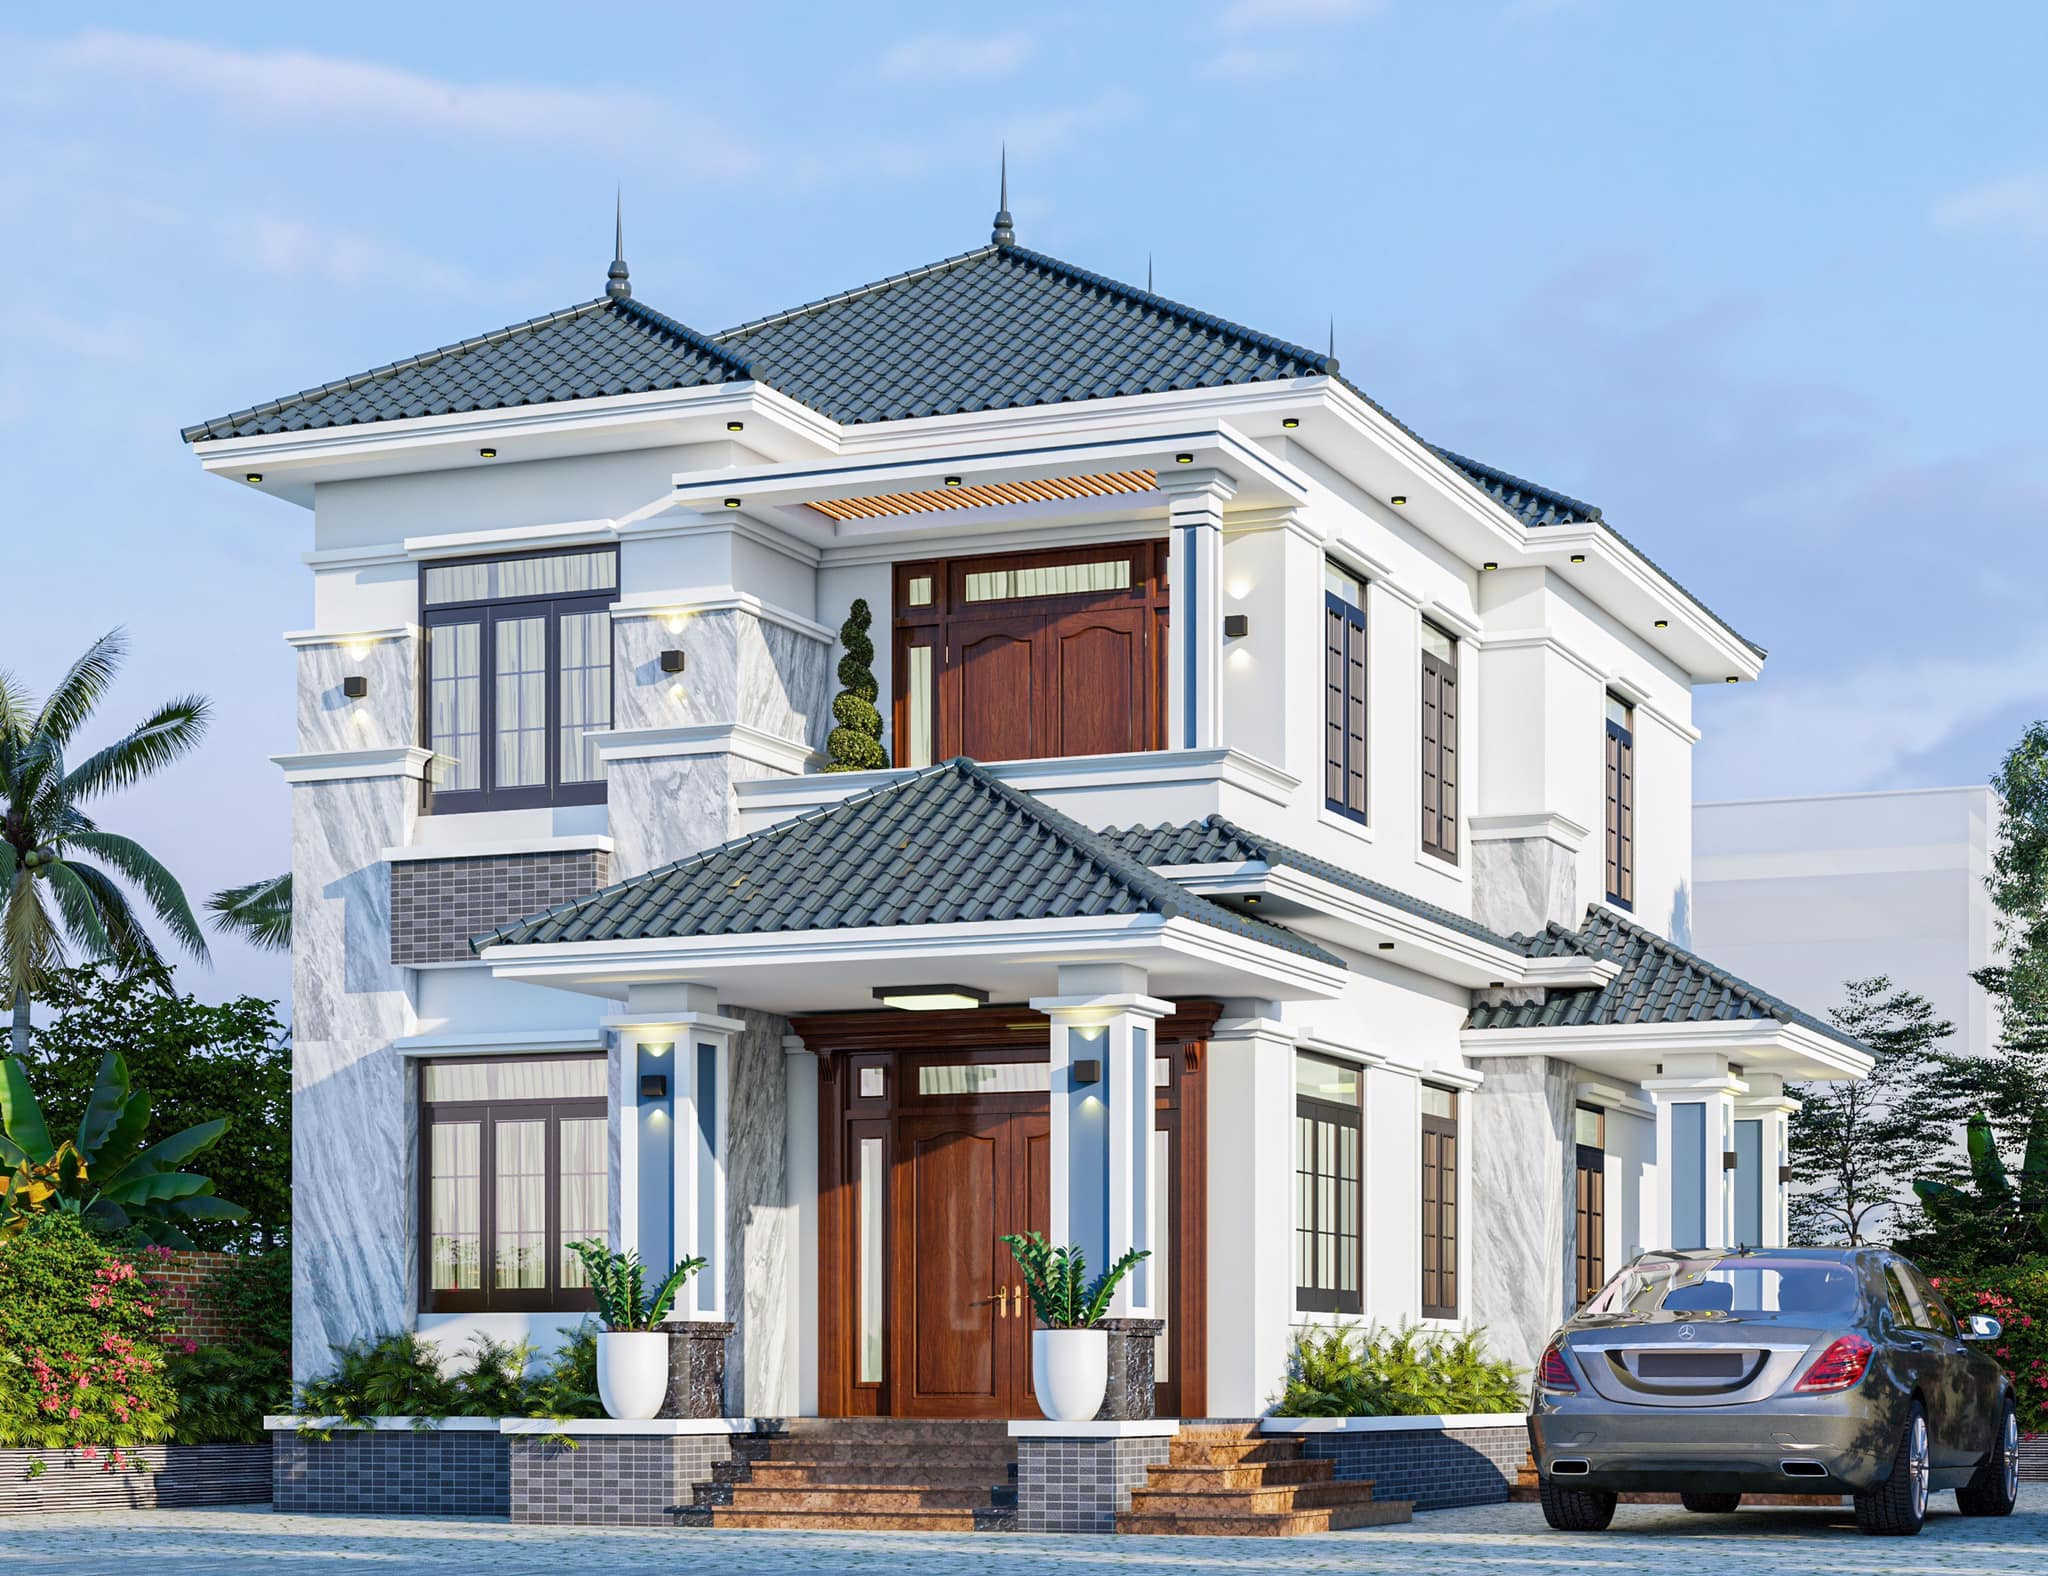 Sự kết hợp hài hòa giữa màu tôn lợp và kiểu nhà là yếu tố quan trọng không thể bỏ qua khi bạn xây dựng ngôi nhà mơ ước.